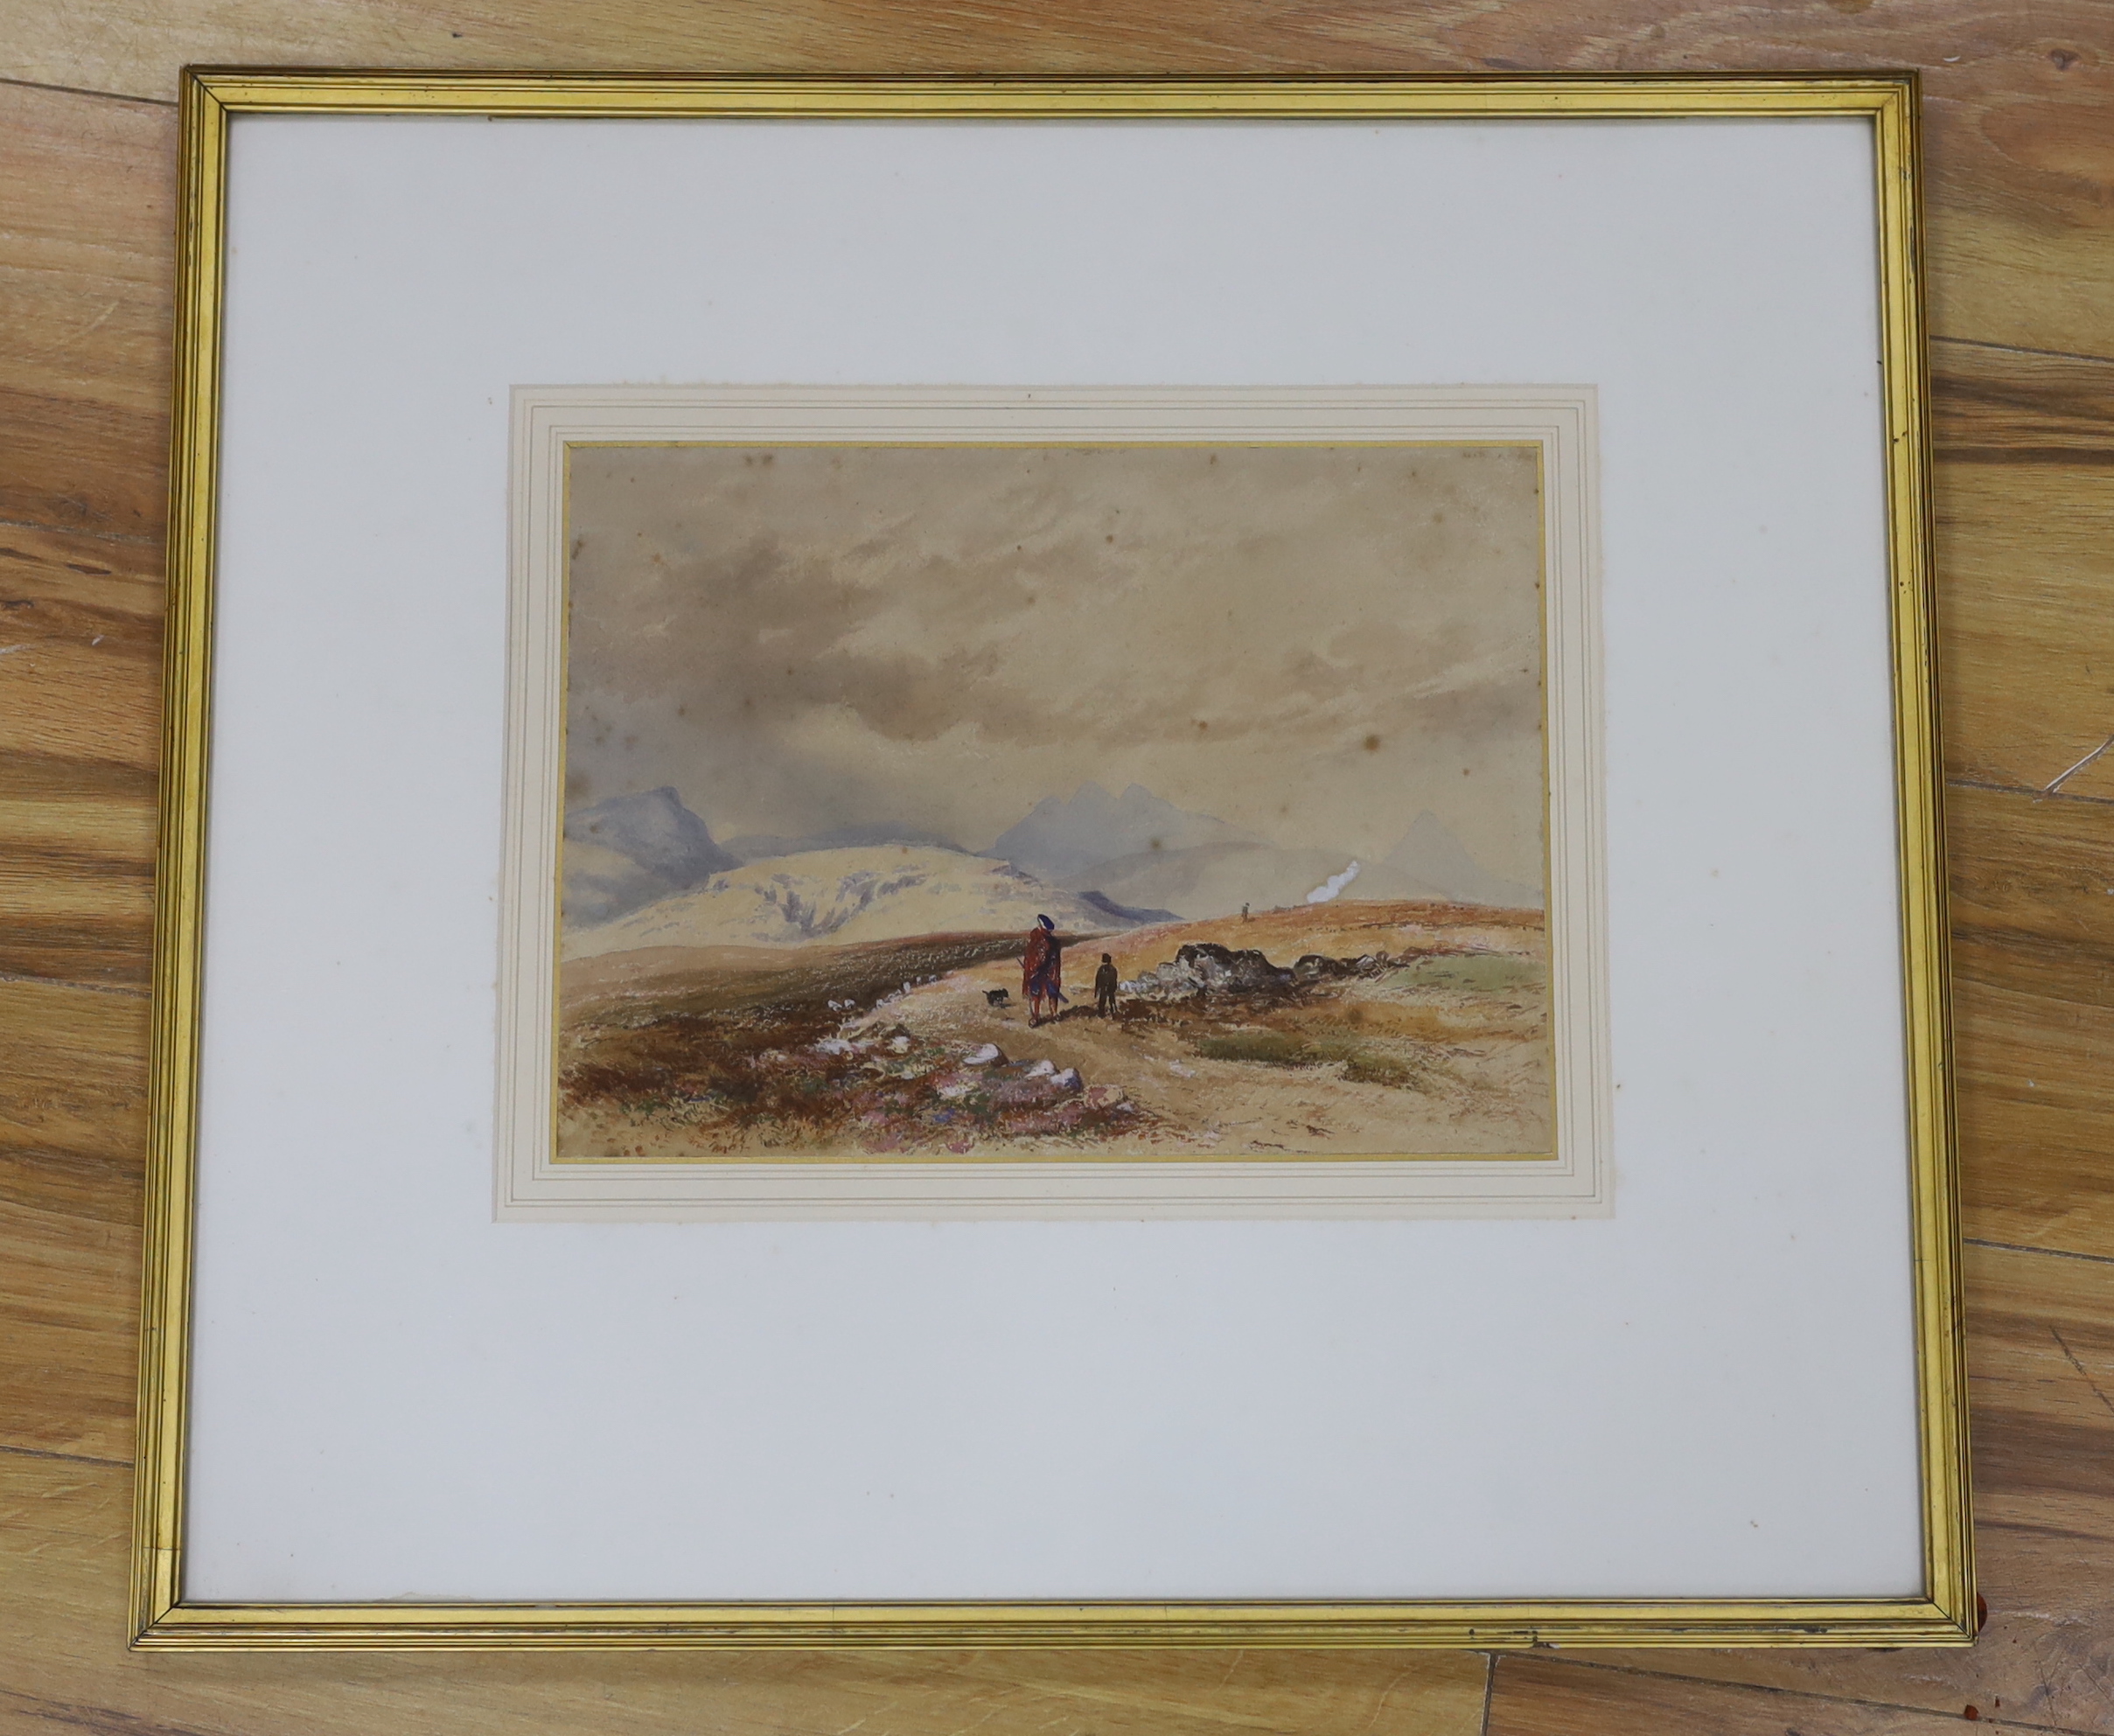 Edward Martindale Richardson (1810-1874), watercolour, Mountainous landscape with figures, details verso, 25 x 34cm